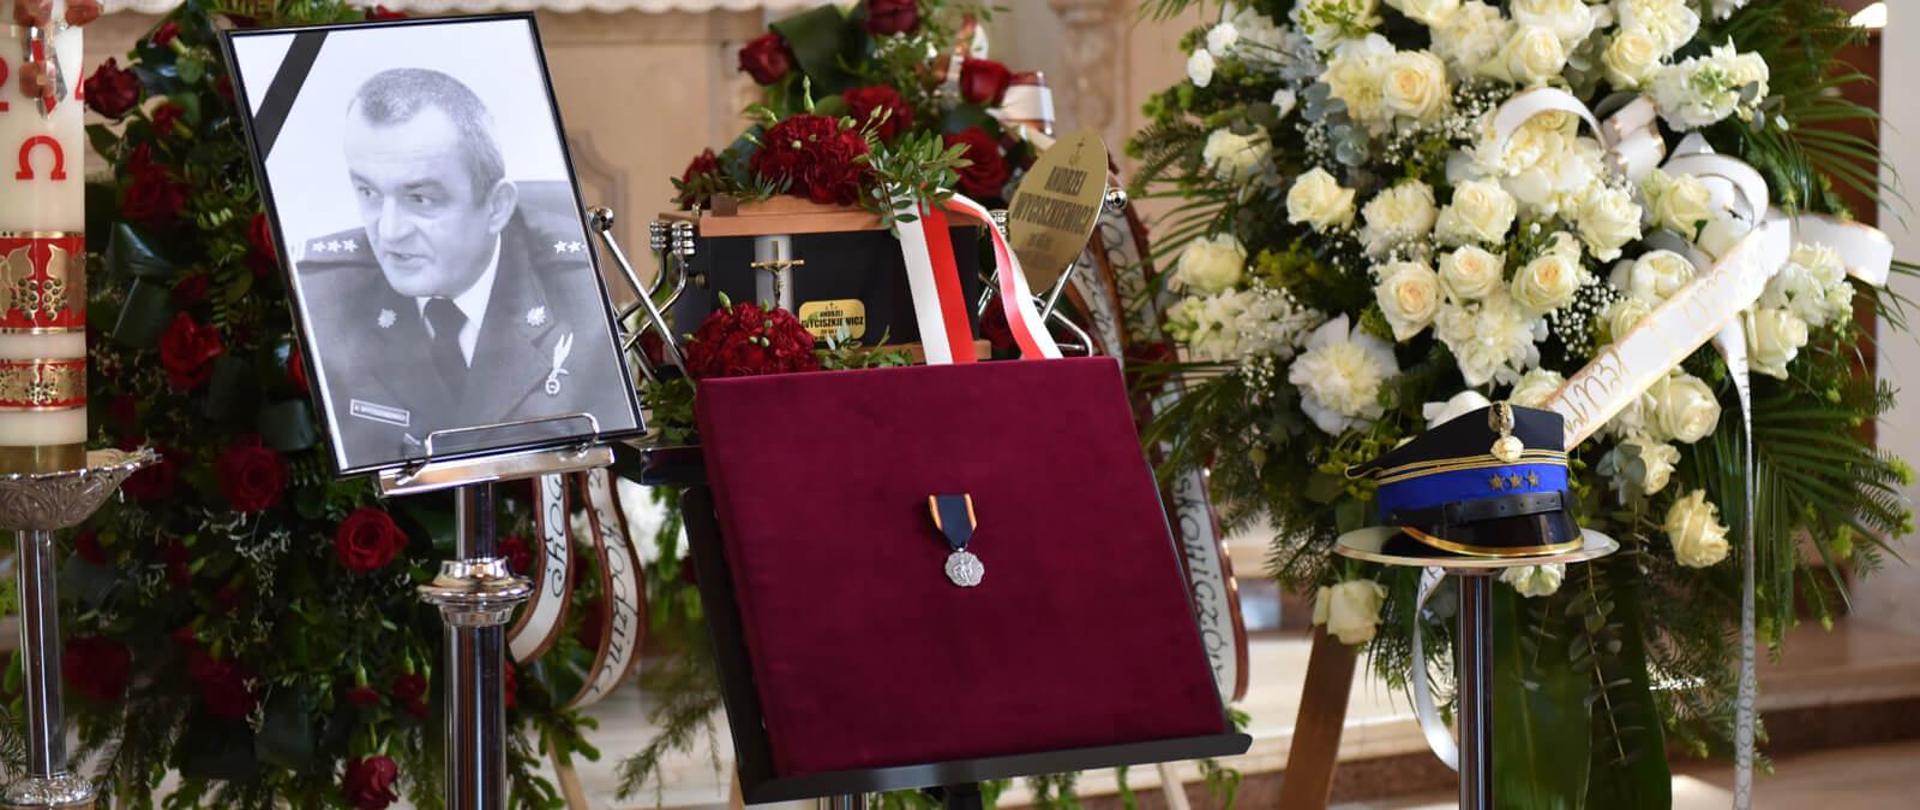 urna, zdjęcie z kirem, rogatywka, medal i wieńce pogrzebowe